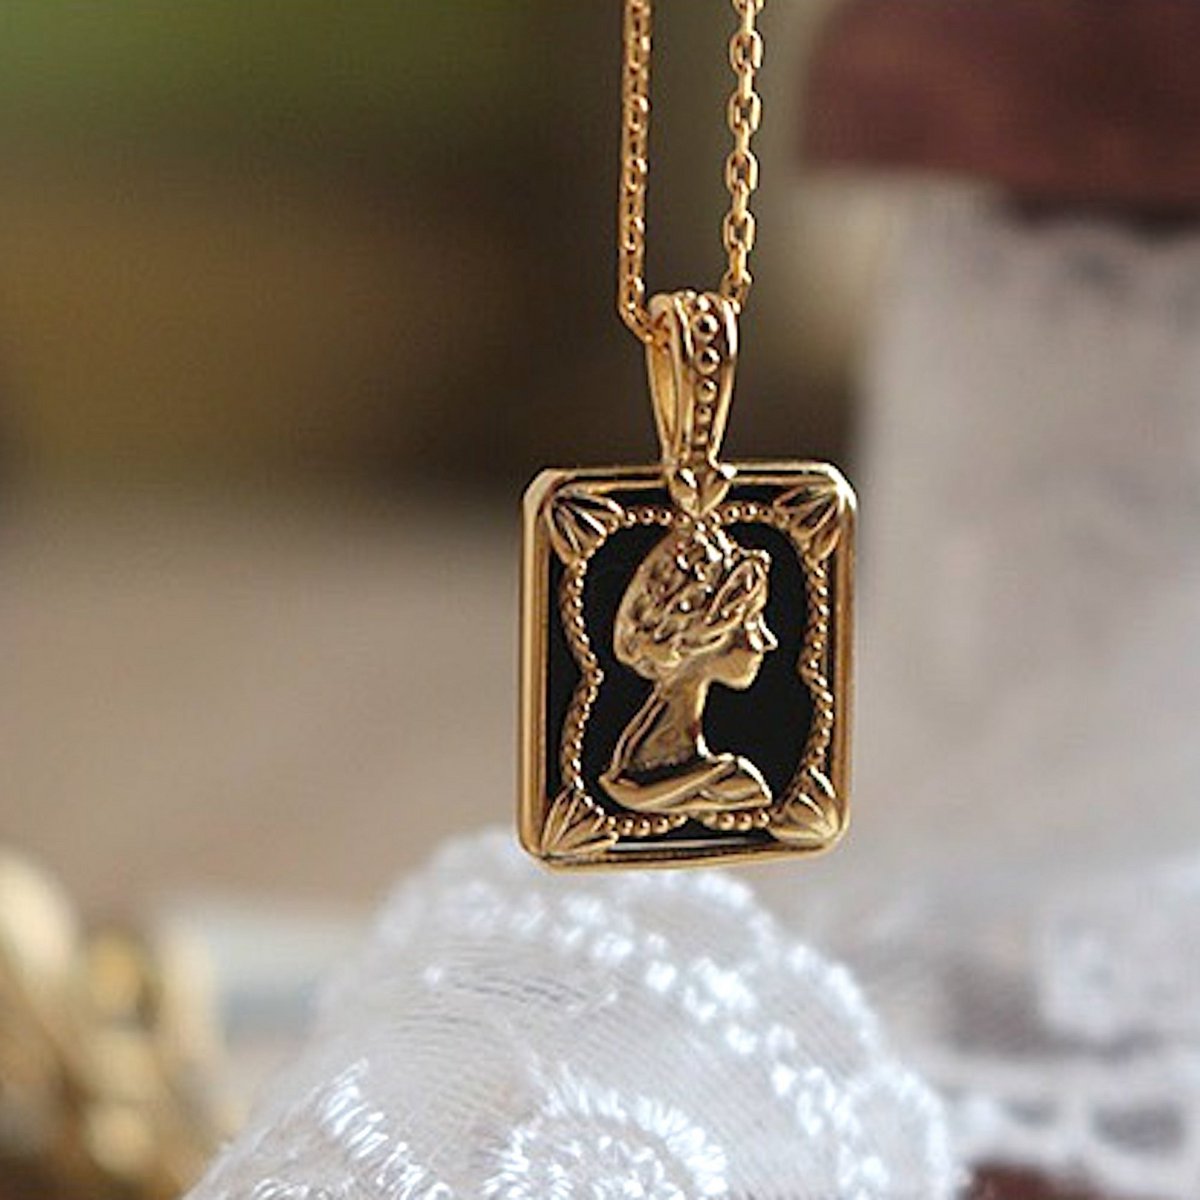 Vintage inspired Gold vermeil Queen portrait pendant necklace